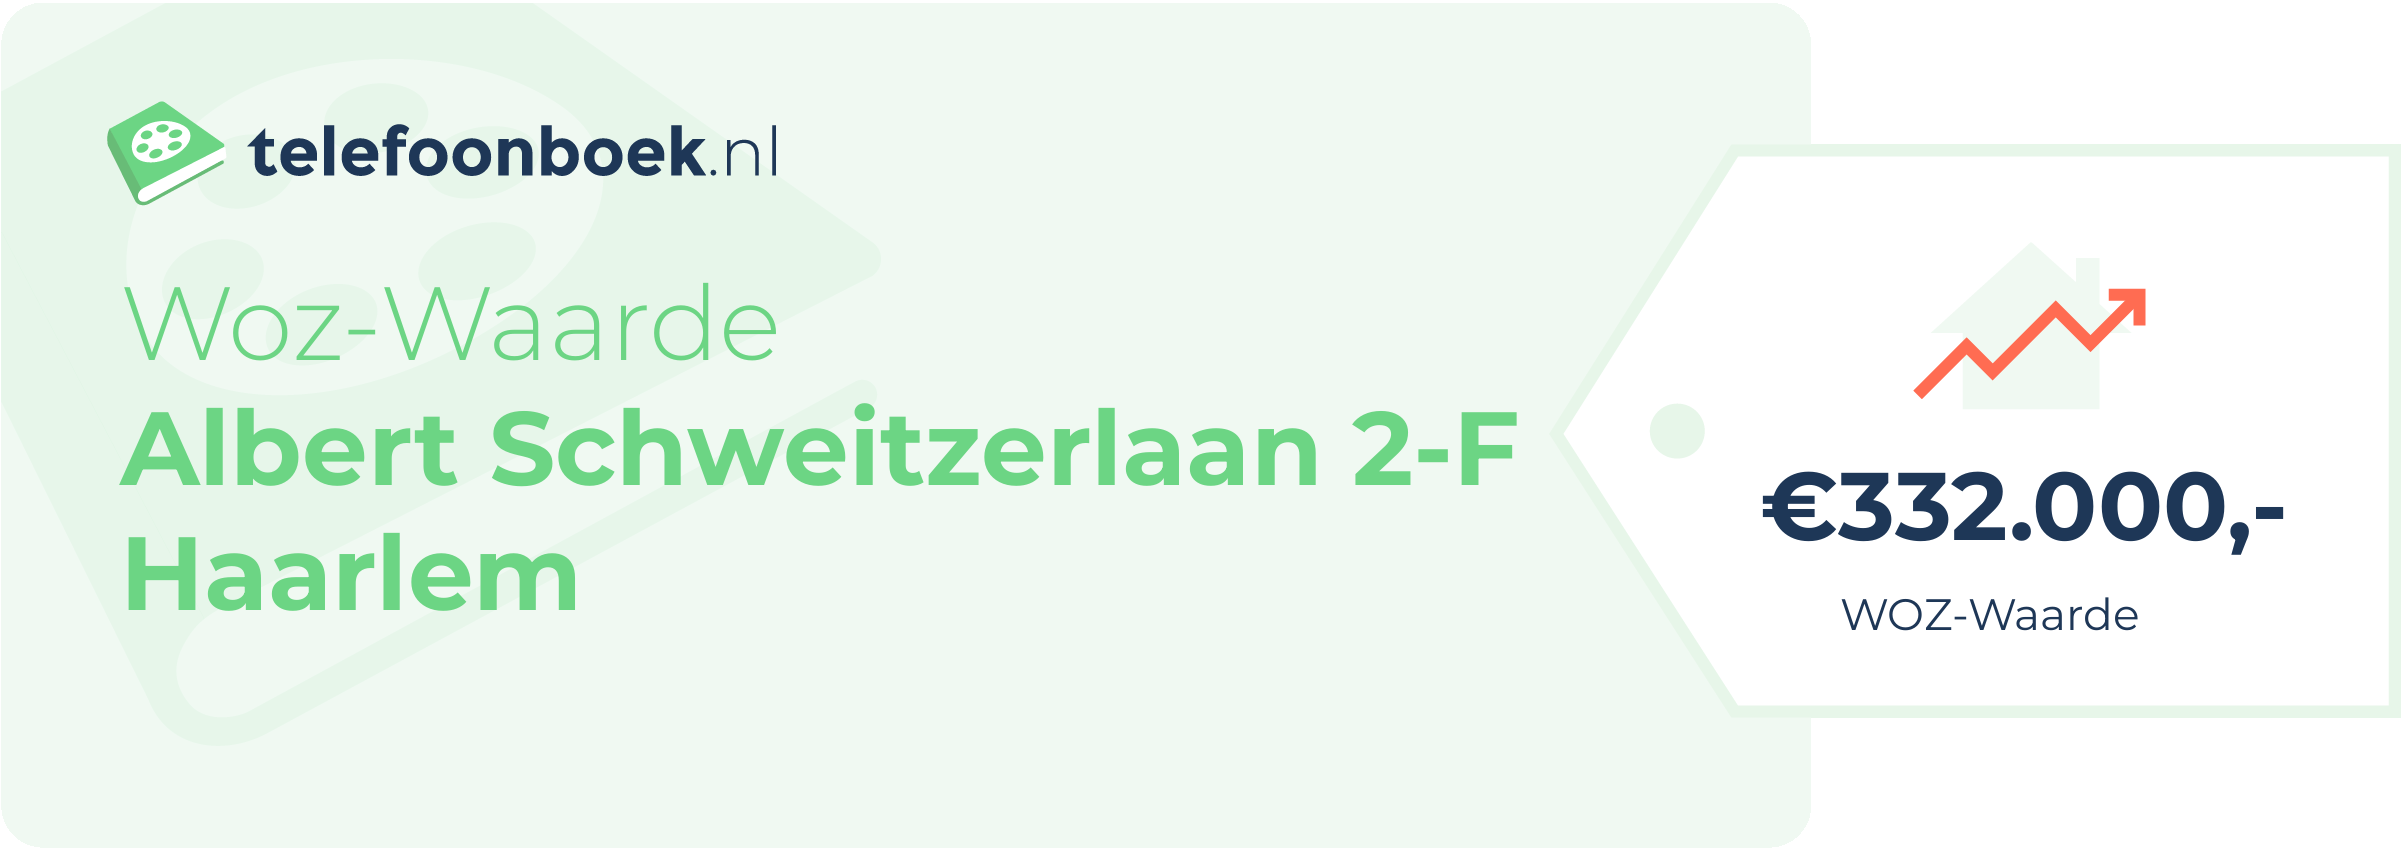 WOZ-waarde Albert Schweitzerlaan 2-F Haarlem